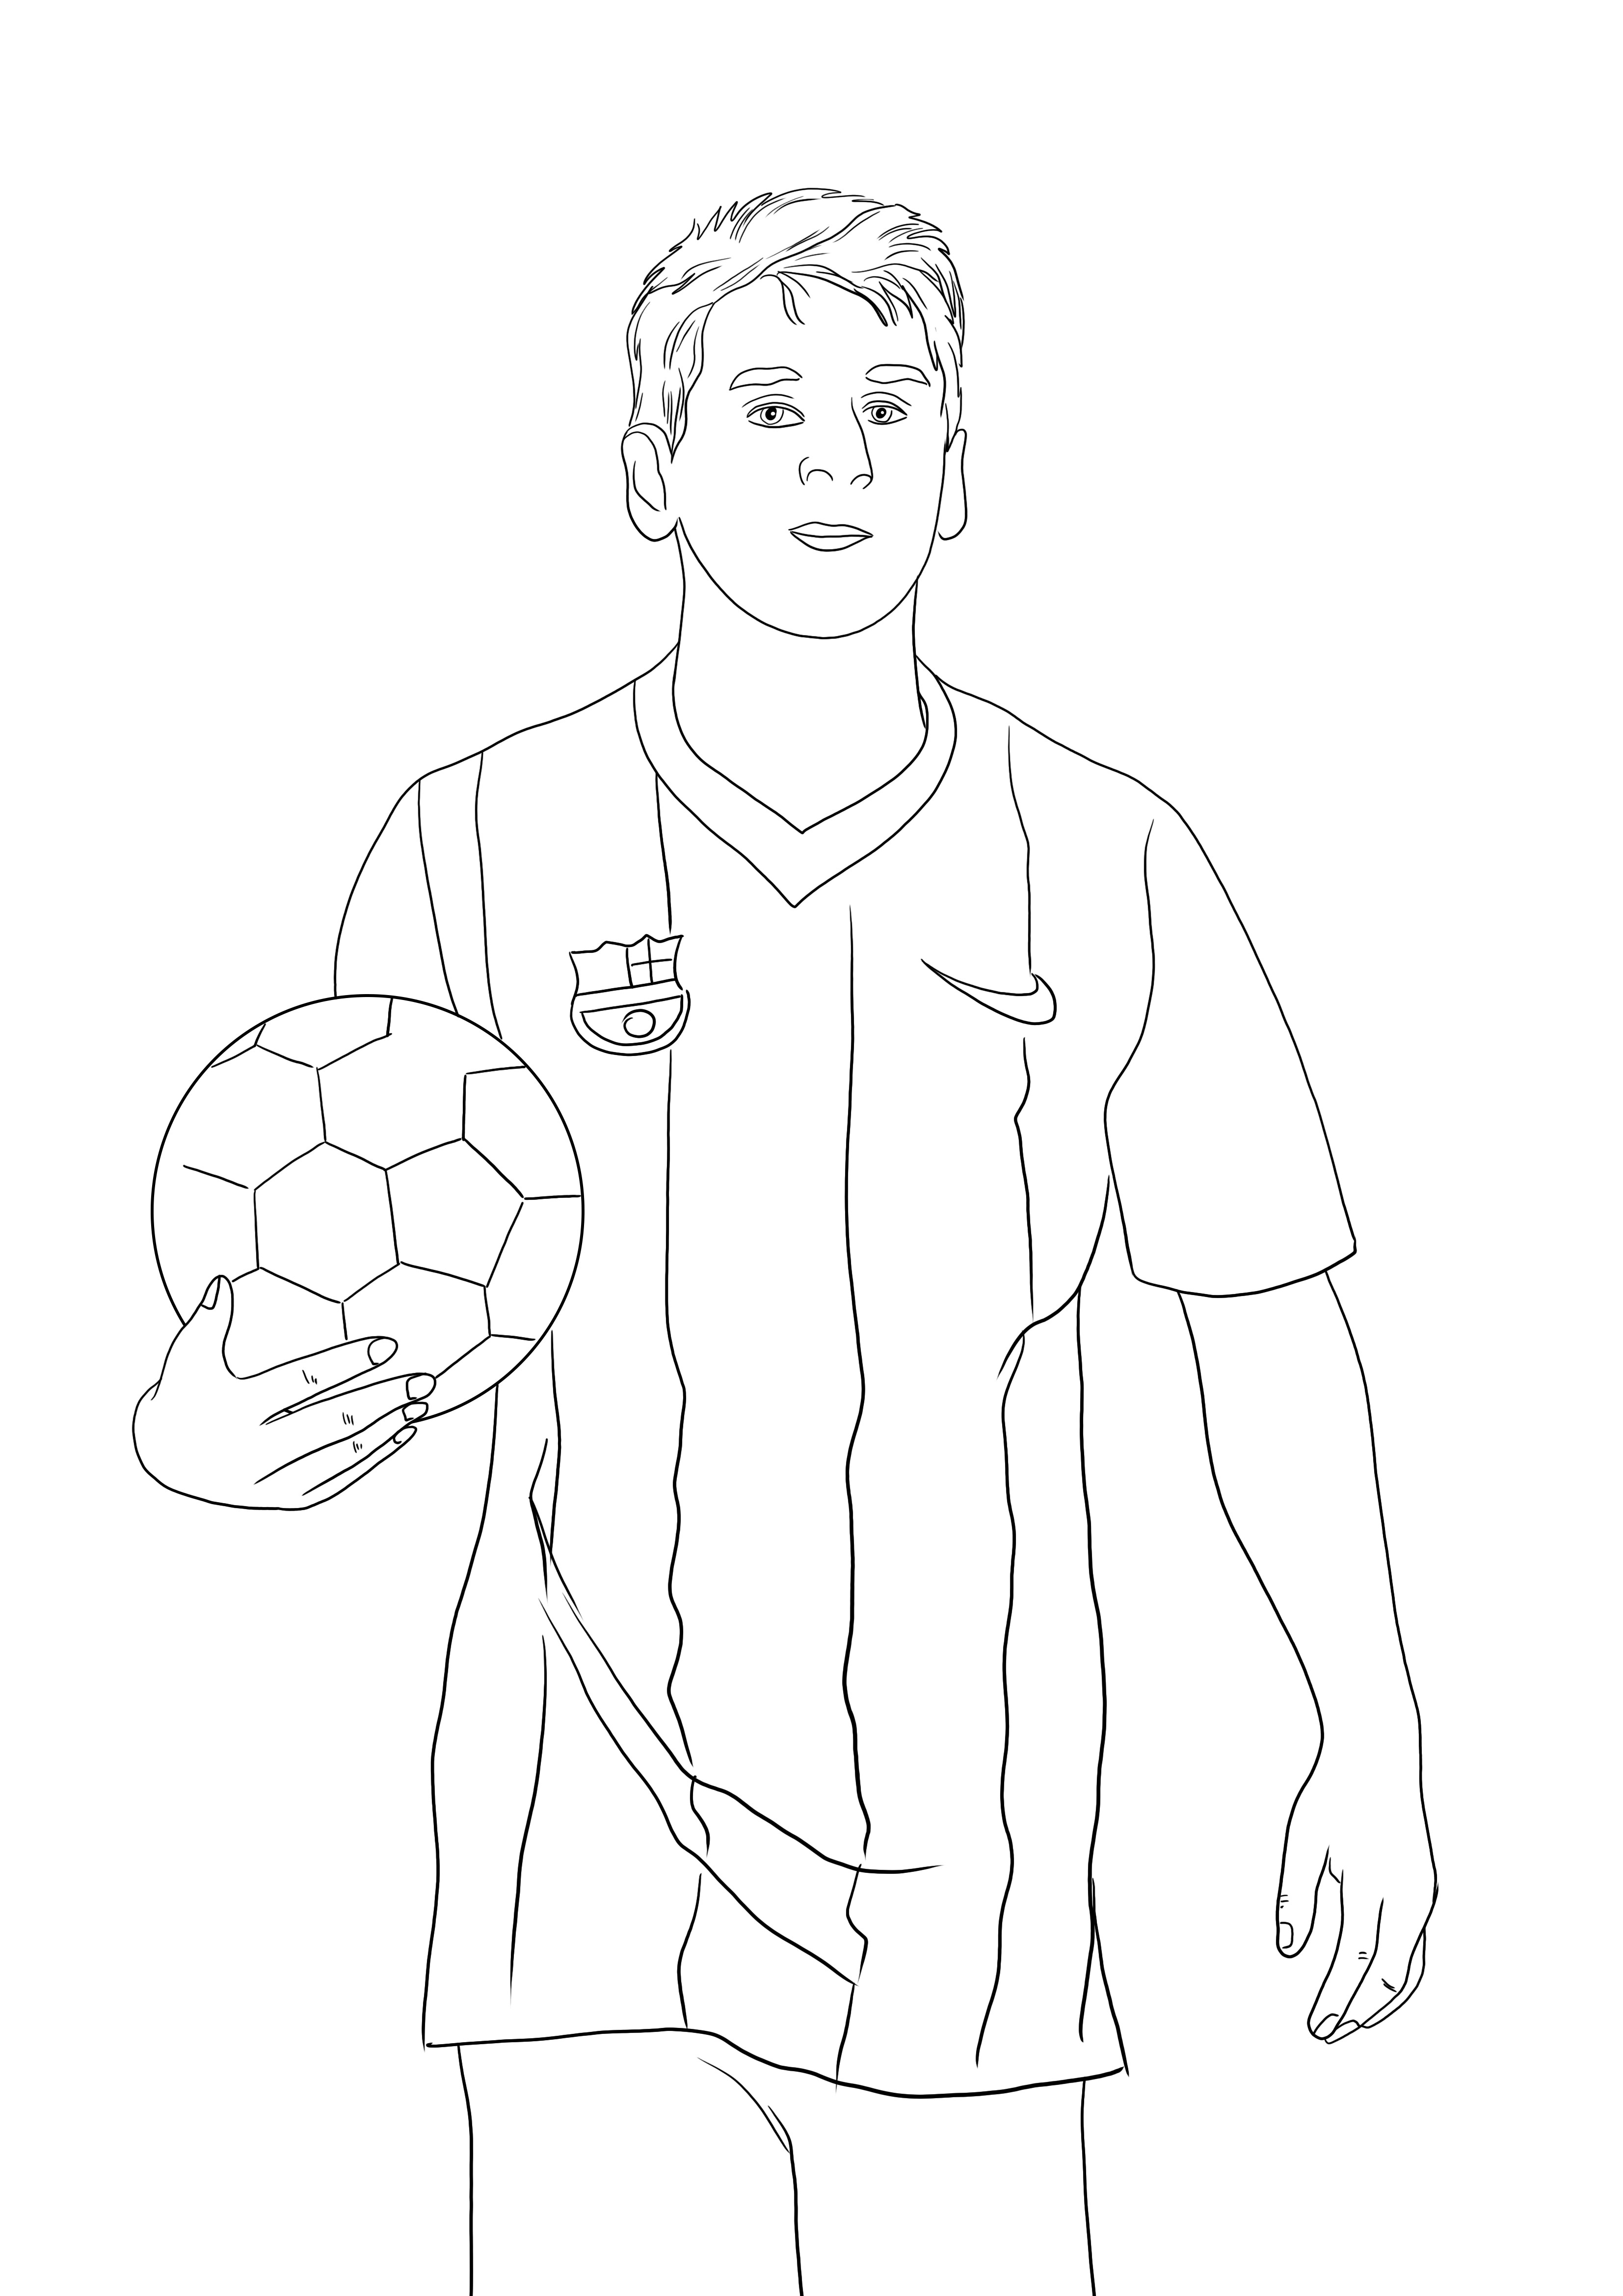 Desenho de Lionel Messi para colorir grátis para imprimir e se divertir colorindo